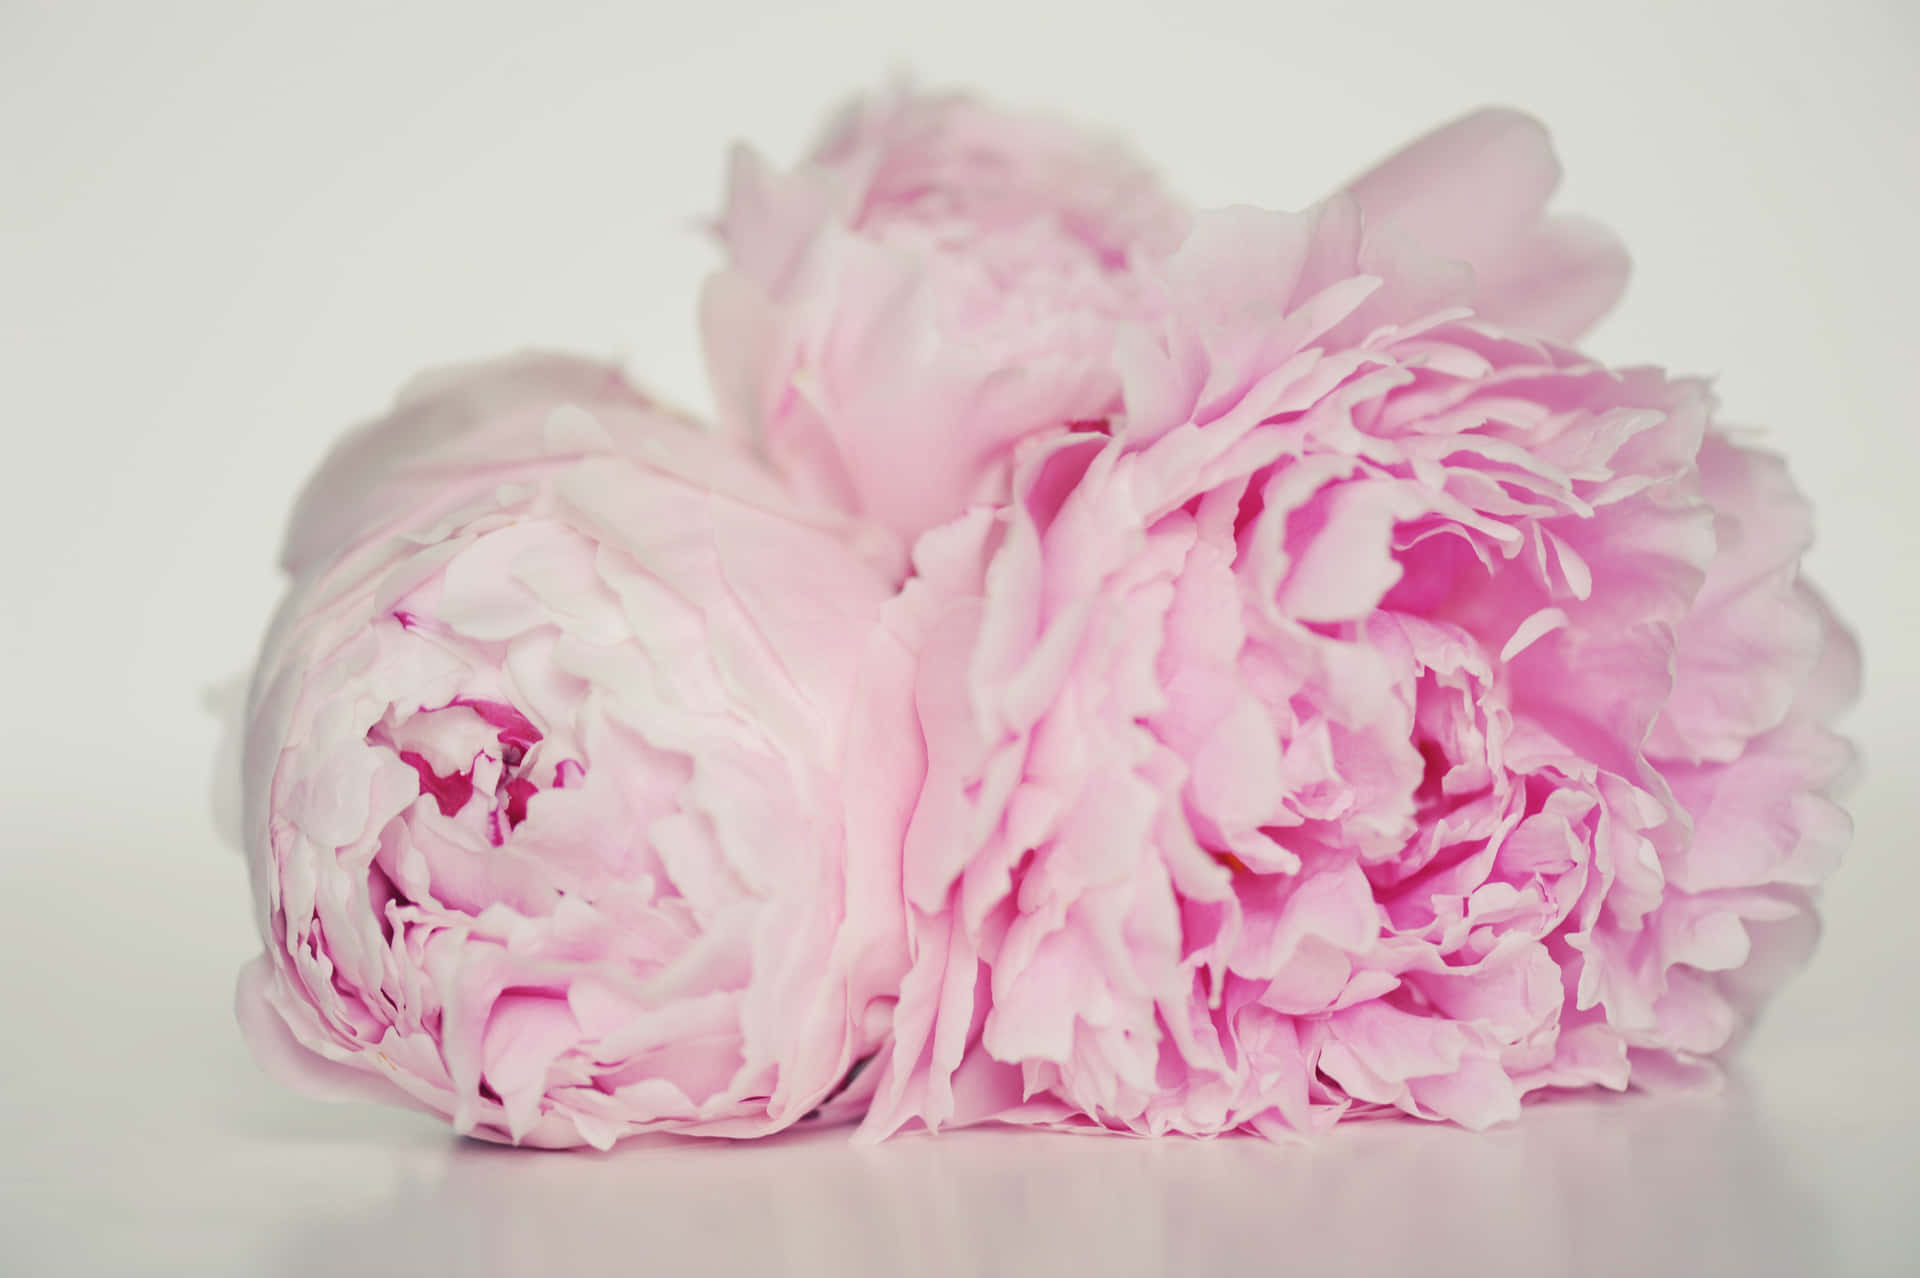 Splendidofiore Di Peonia Rosa E Bianco In Un Giardino Vibrante.